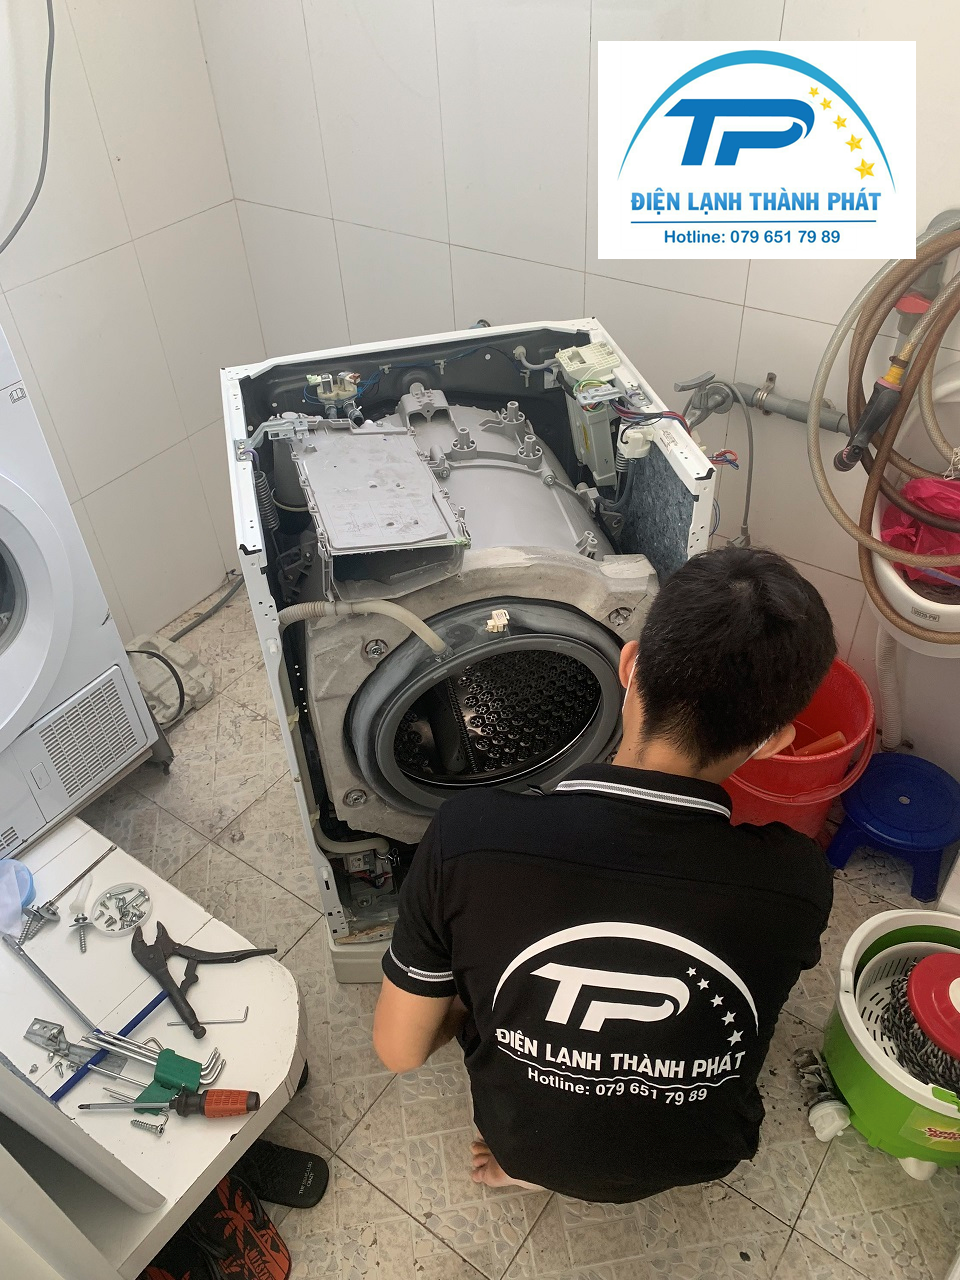 Dịch vụ vệ sinh máy giặt tại nhà Điện lạnh Thành Phát làm việc rất bài bản, cẩn thận.